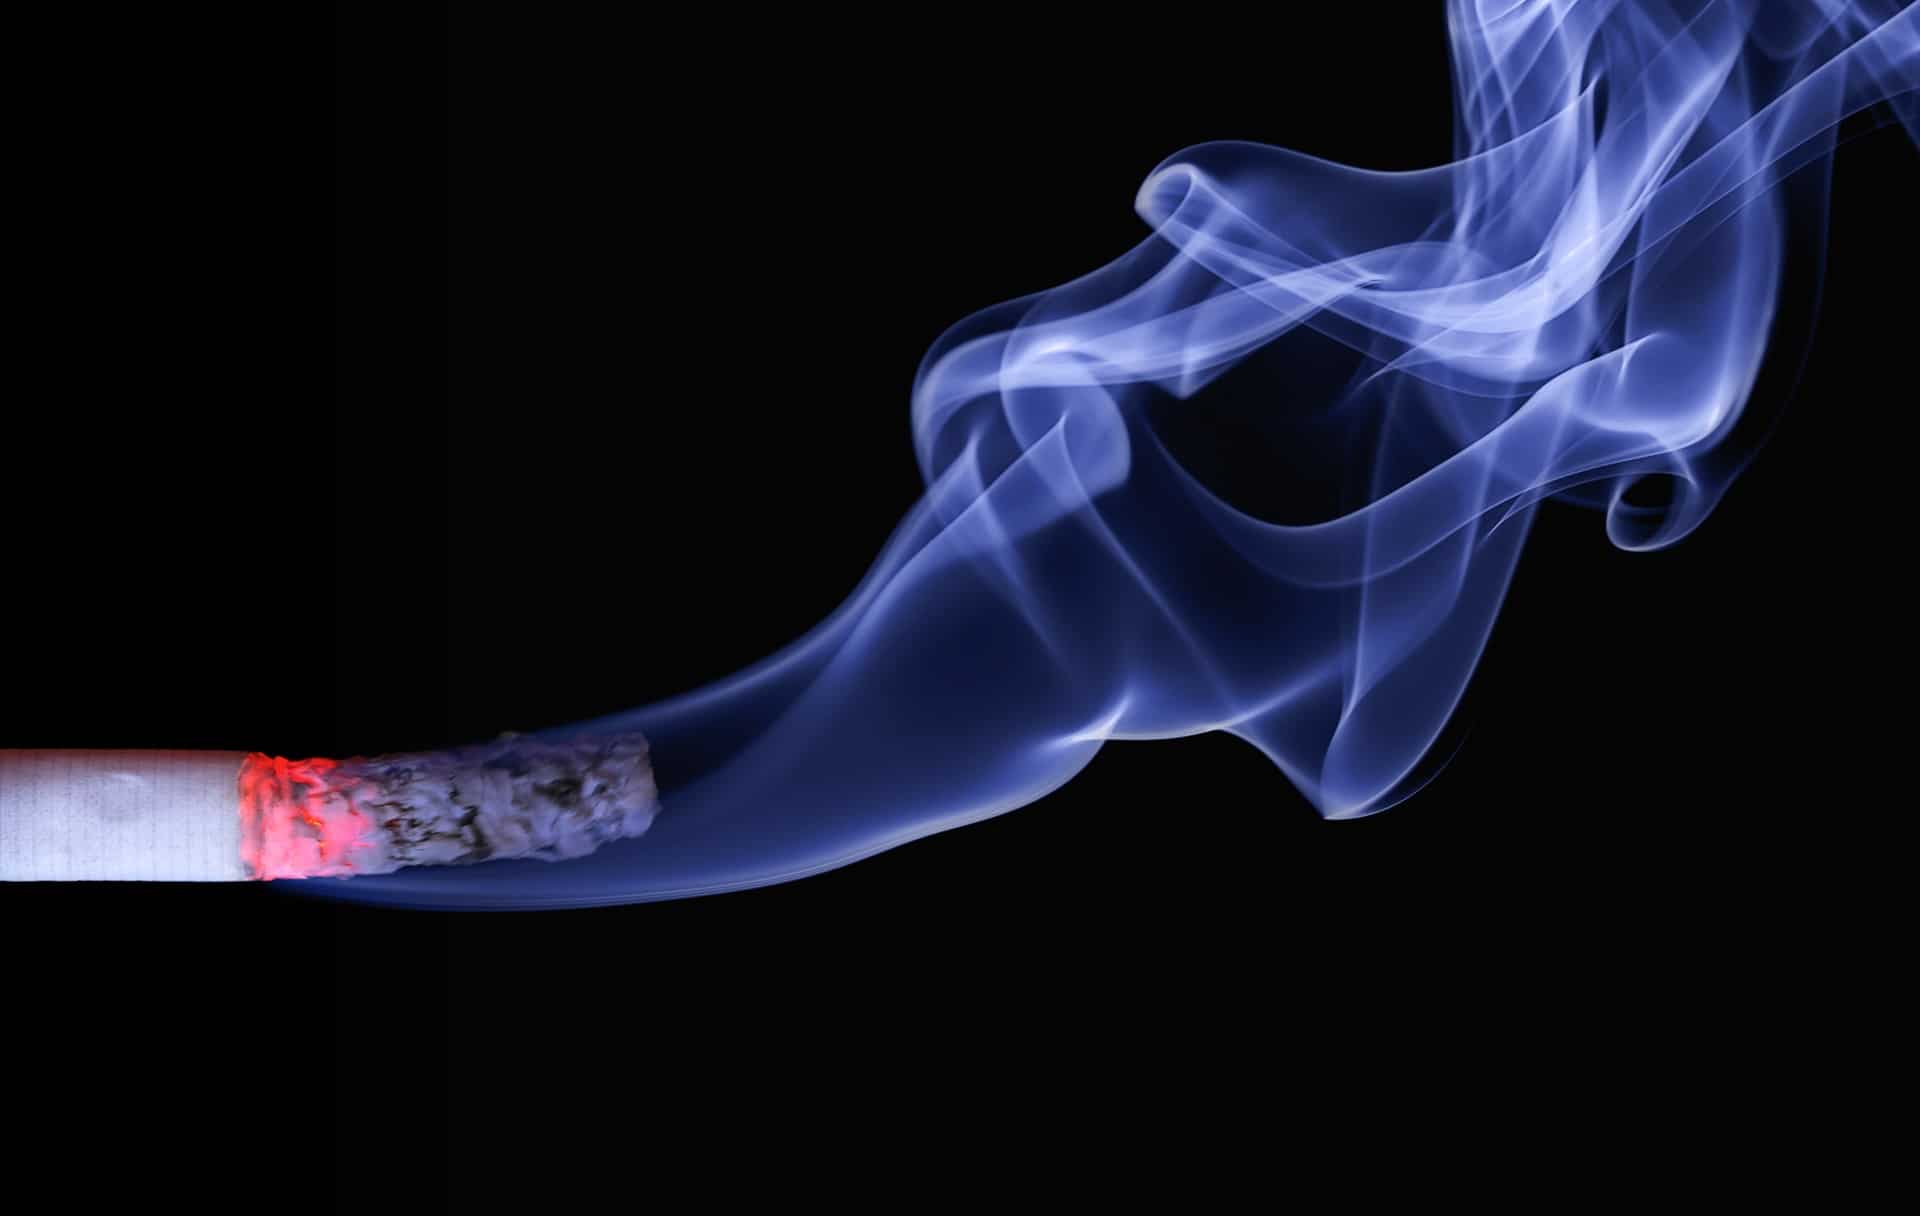 Il fumo dopo l'estrazione di un dente e la stomatite da nicotina ha spiegato